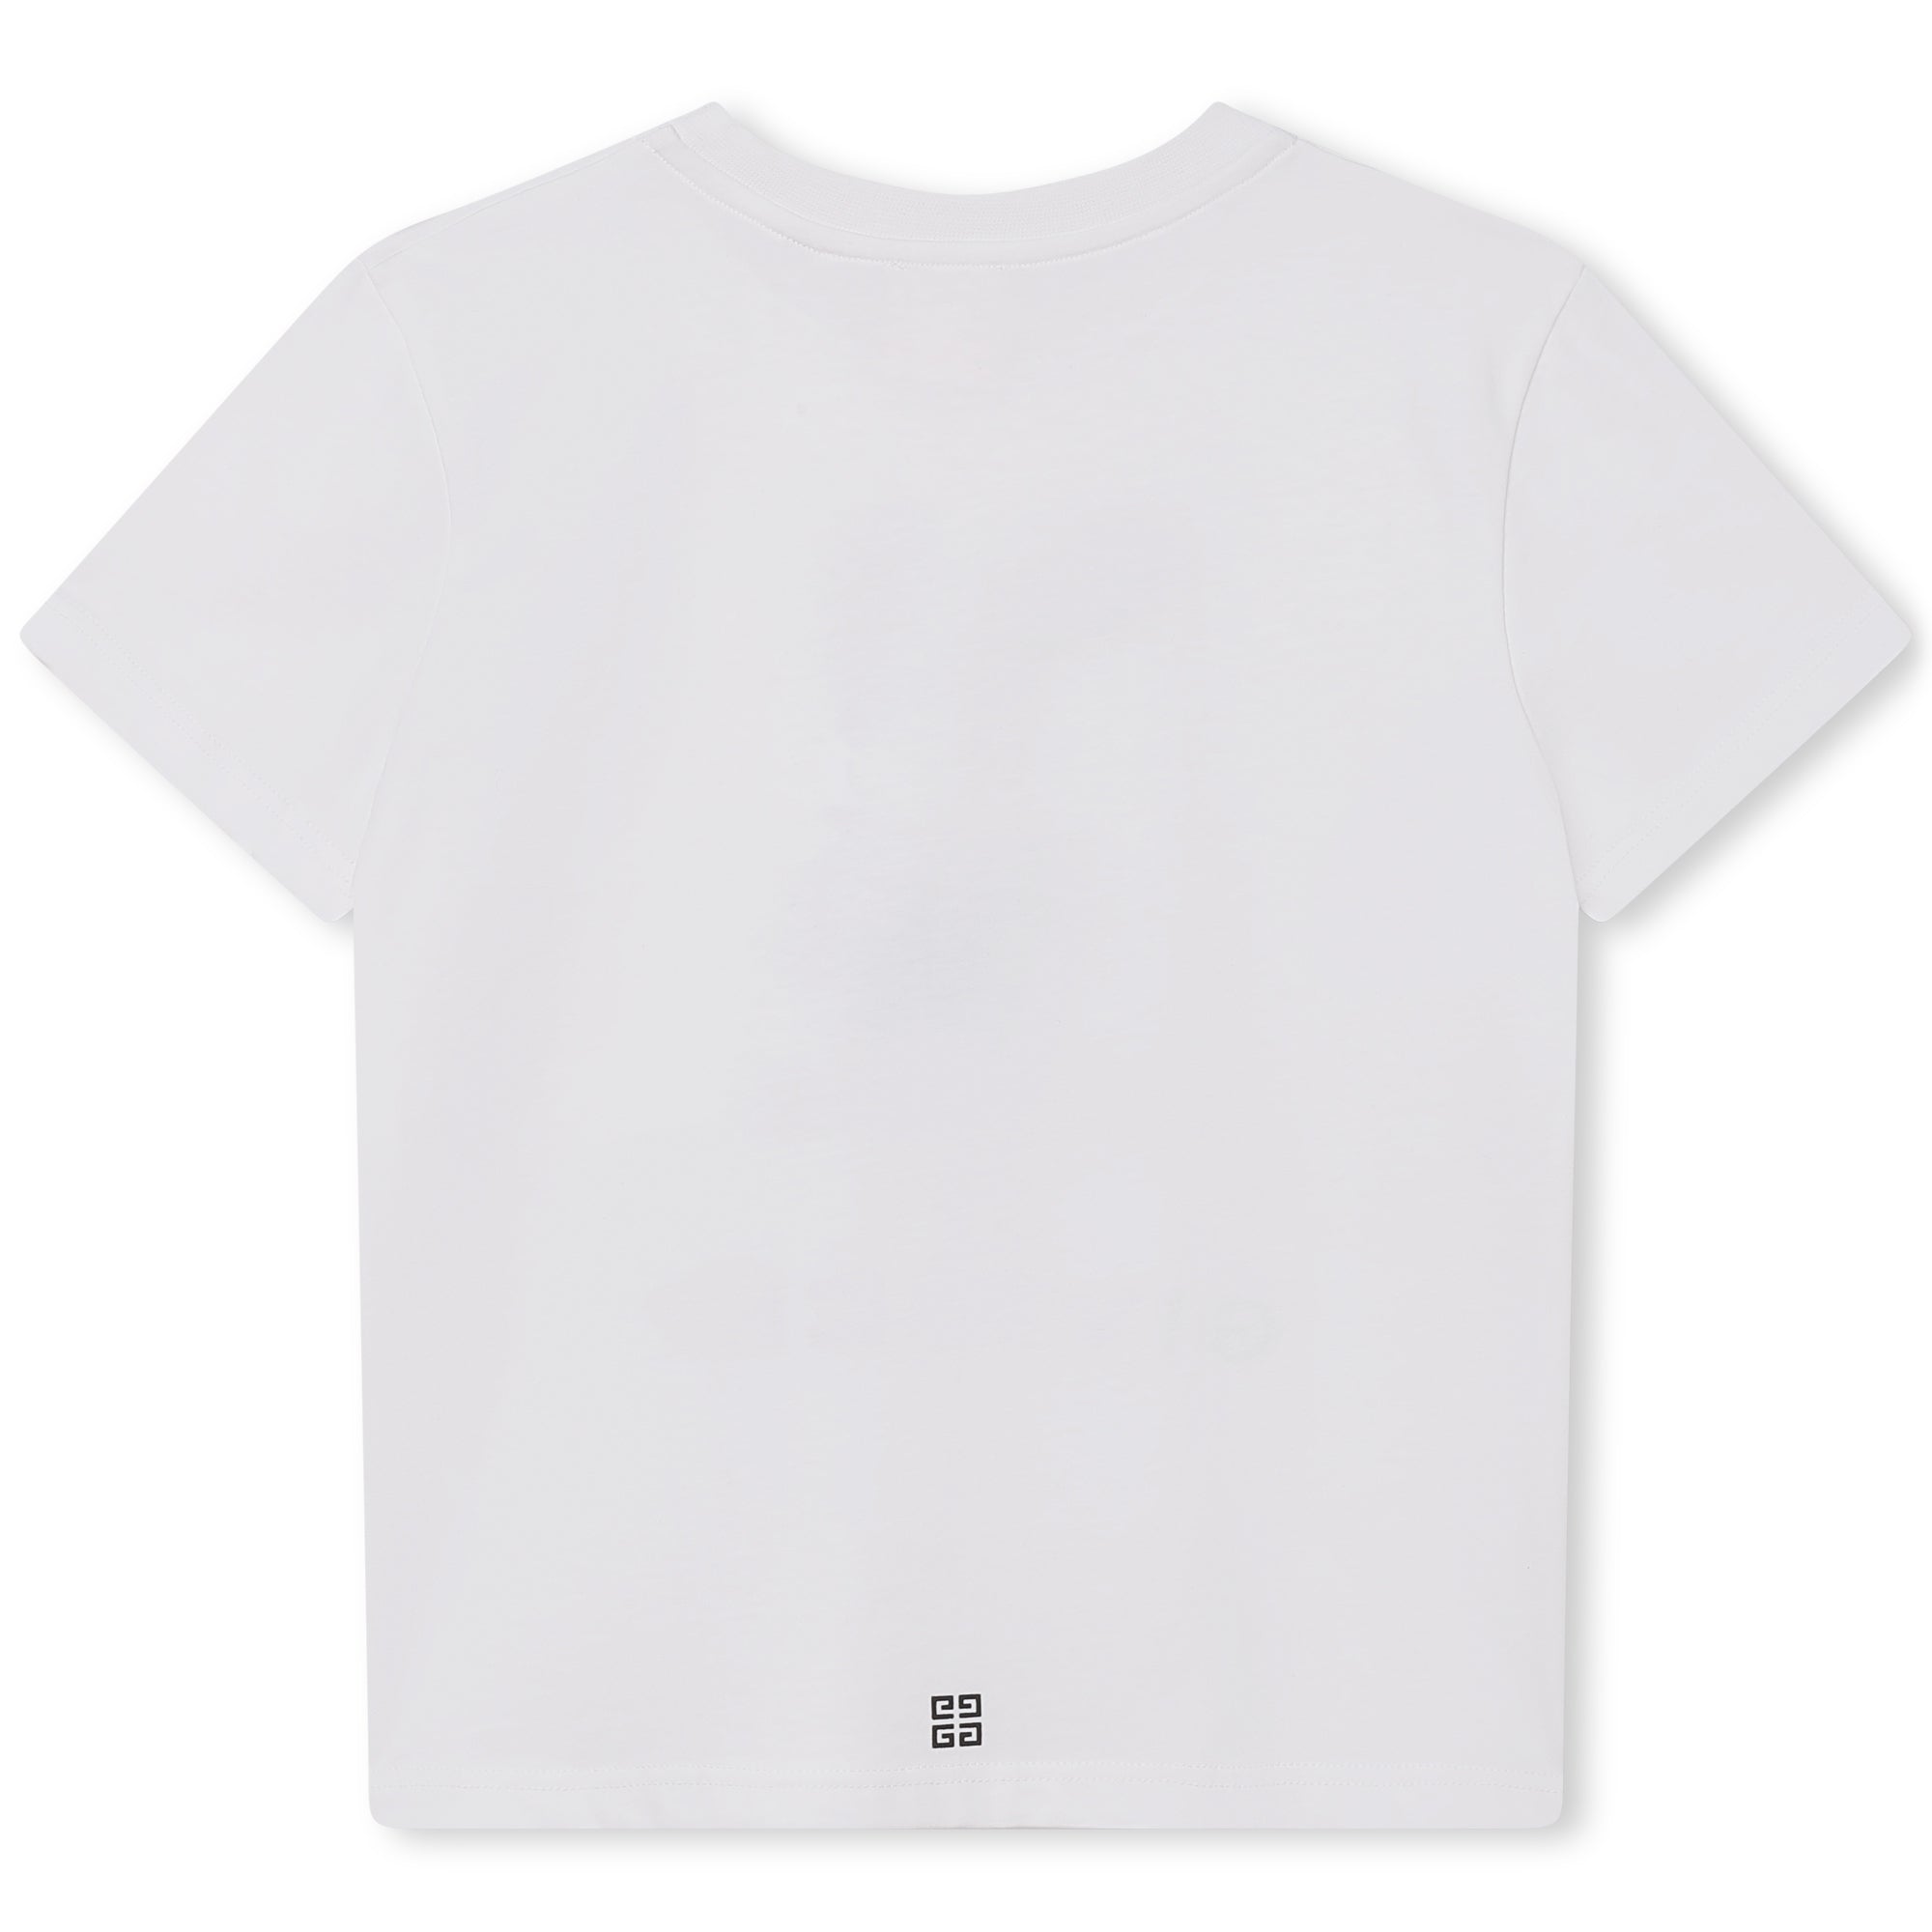 Tee-shirt 08A White 100% Cotton - Trimming: 97% Cotton, 3% Elastane